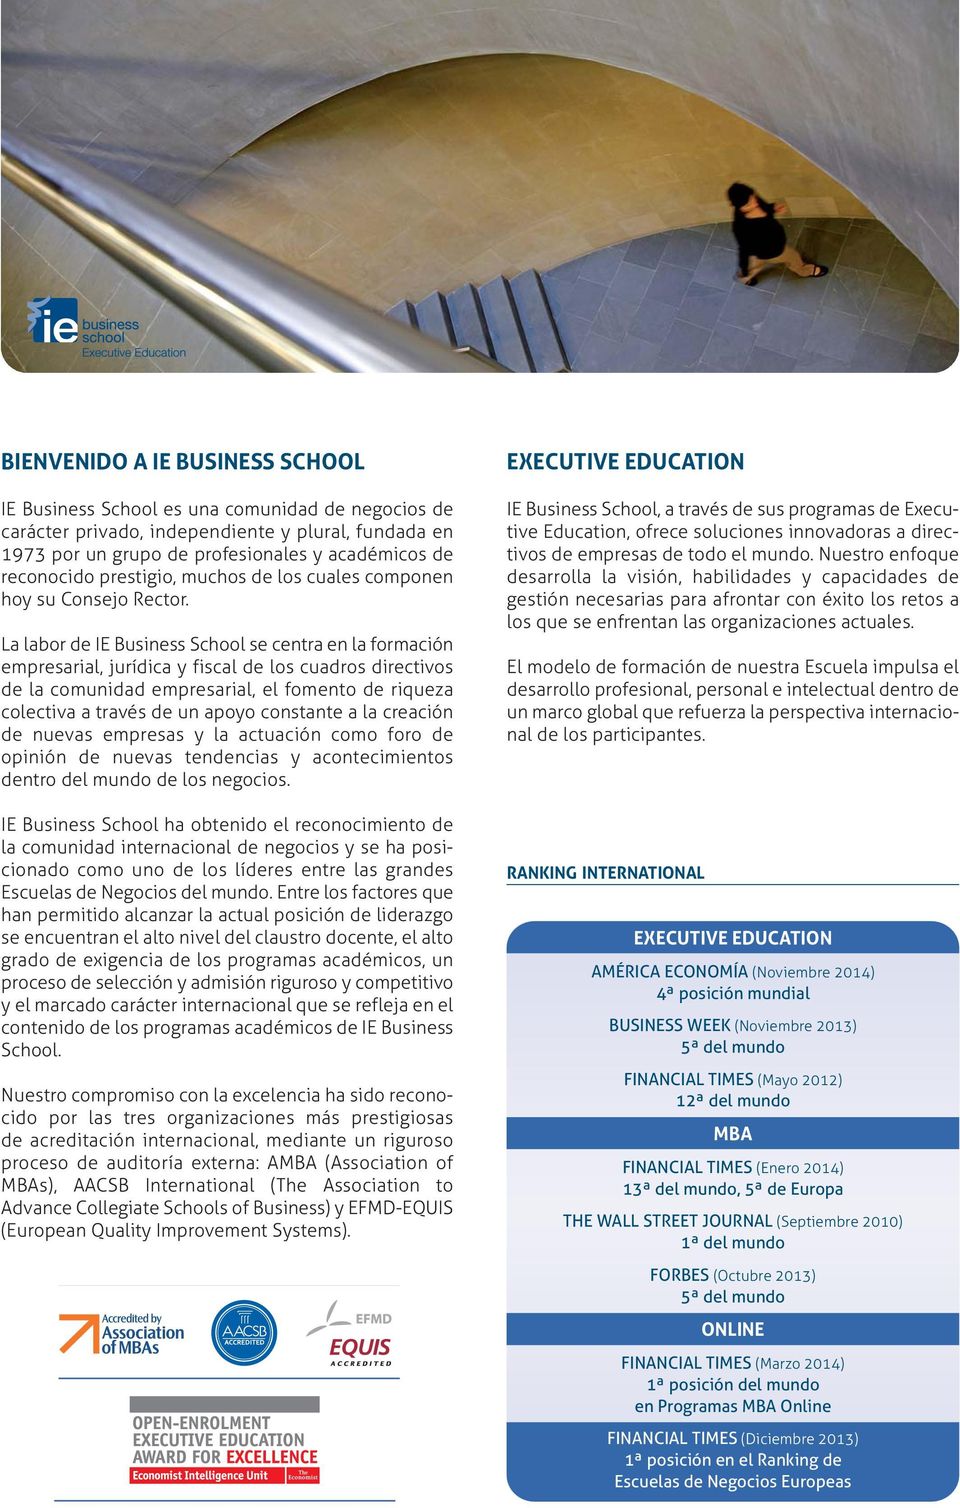 La labor de IE Business School se centra en la formación empresarial, jurídica y fiscal de los cuadros directivos de la comunidad empresarial, el fomento de riqueza colectiva a través de un apoyo